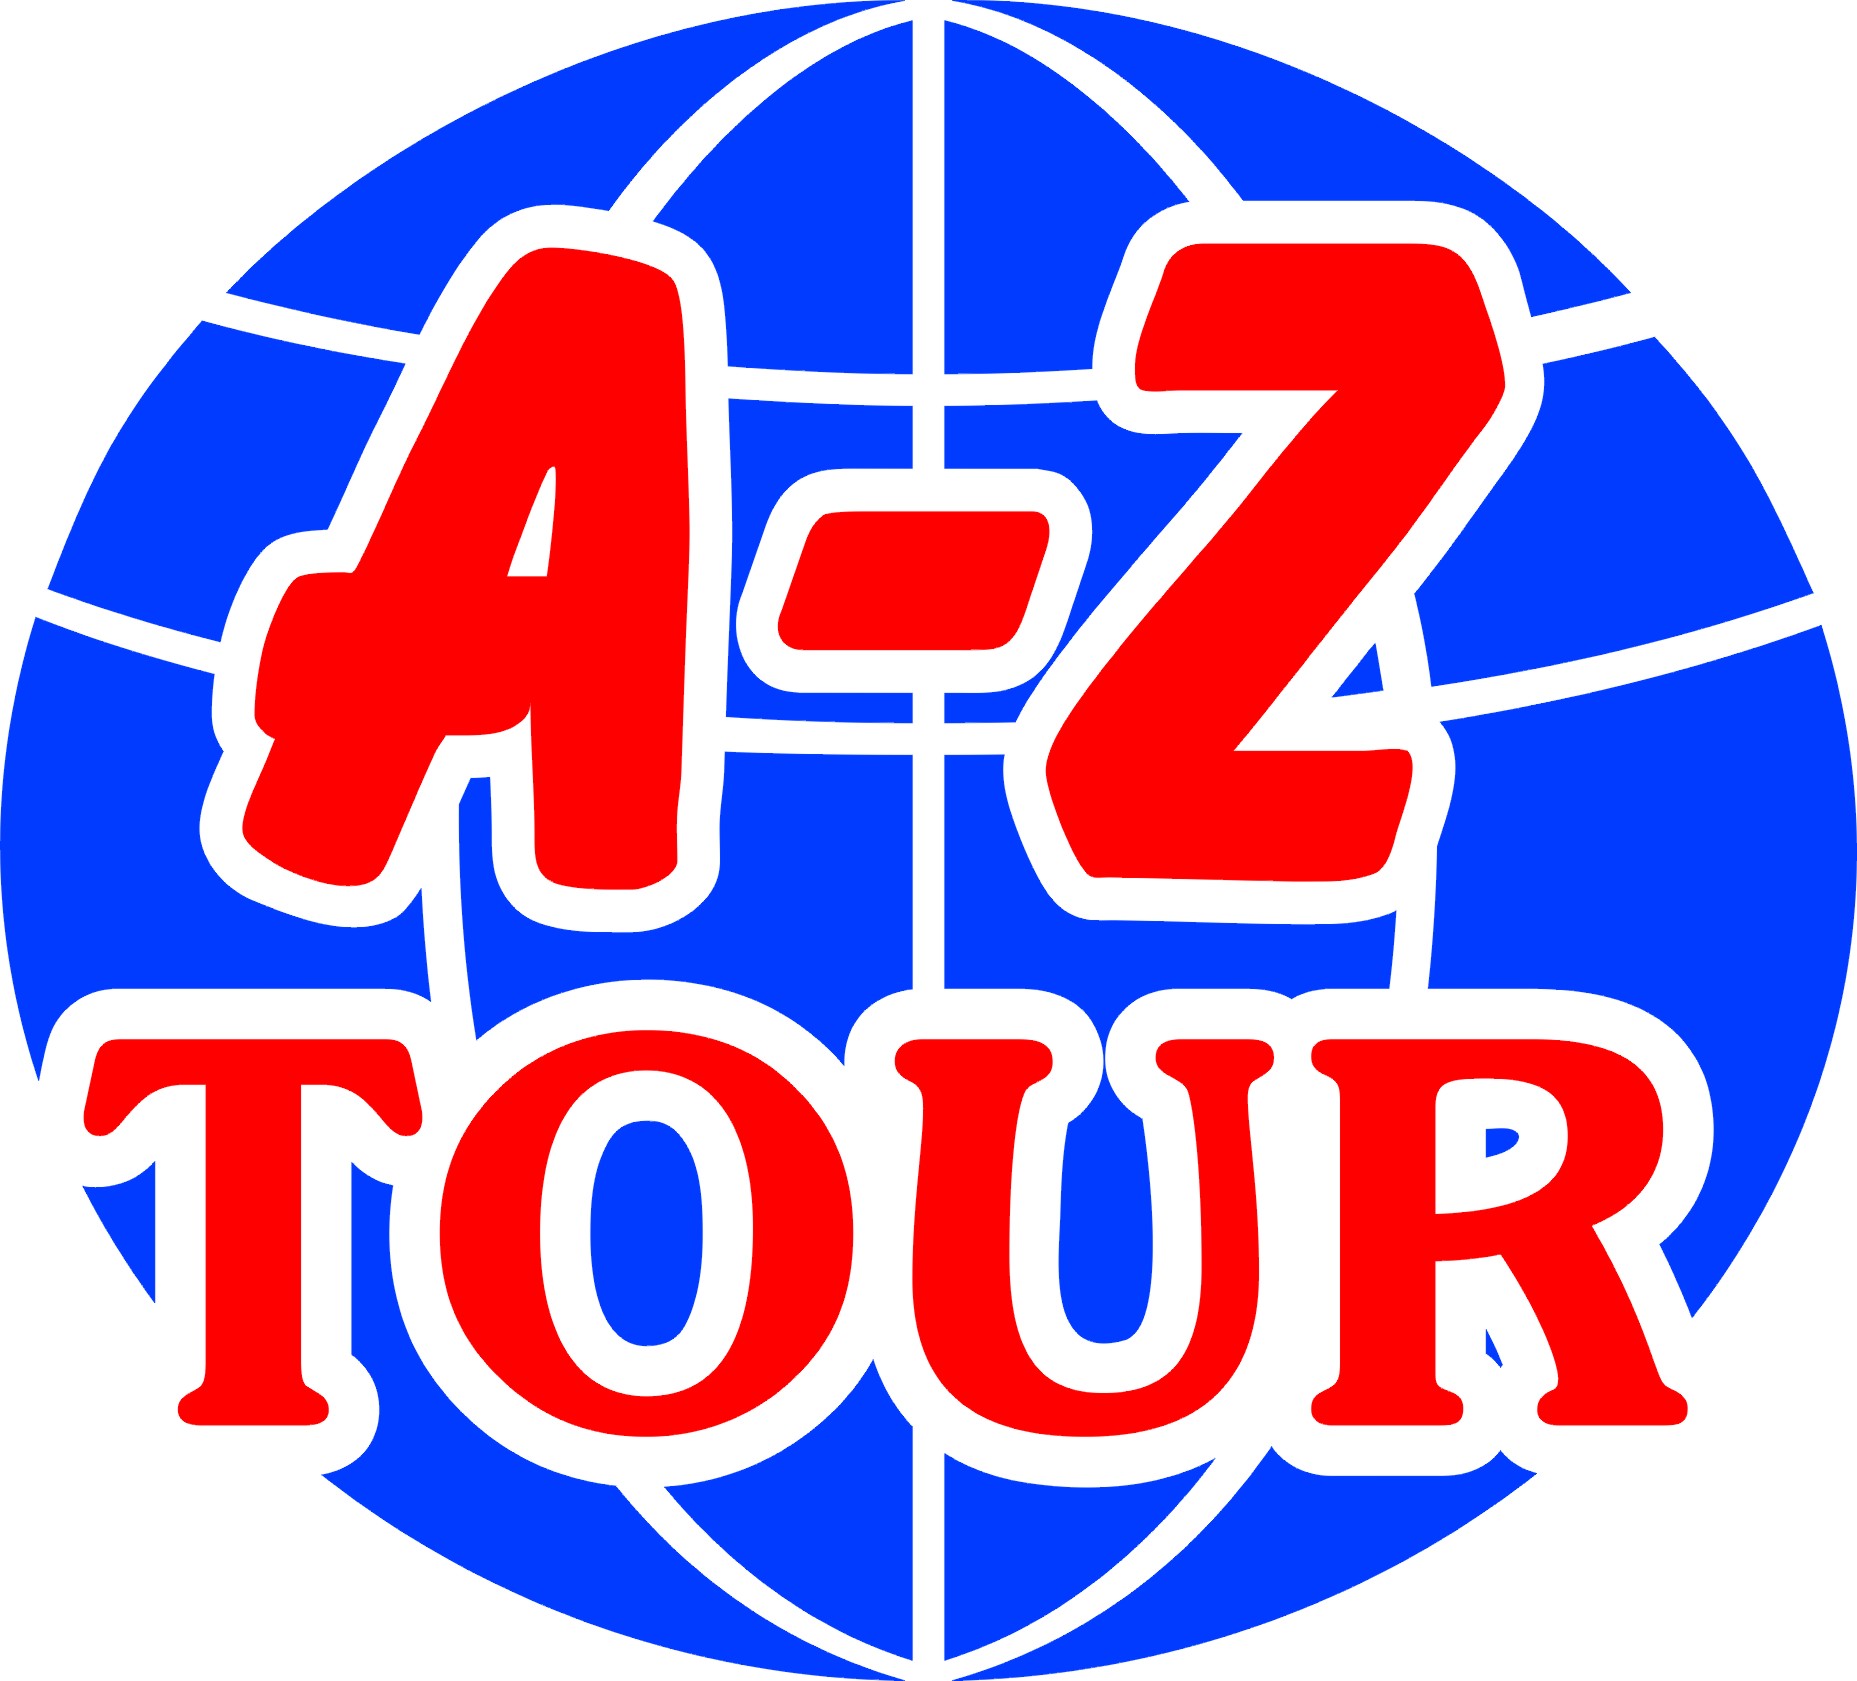 A-Z TOUR